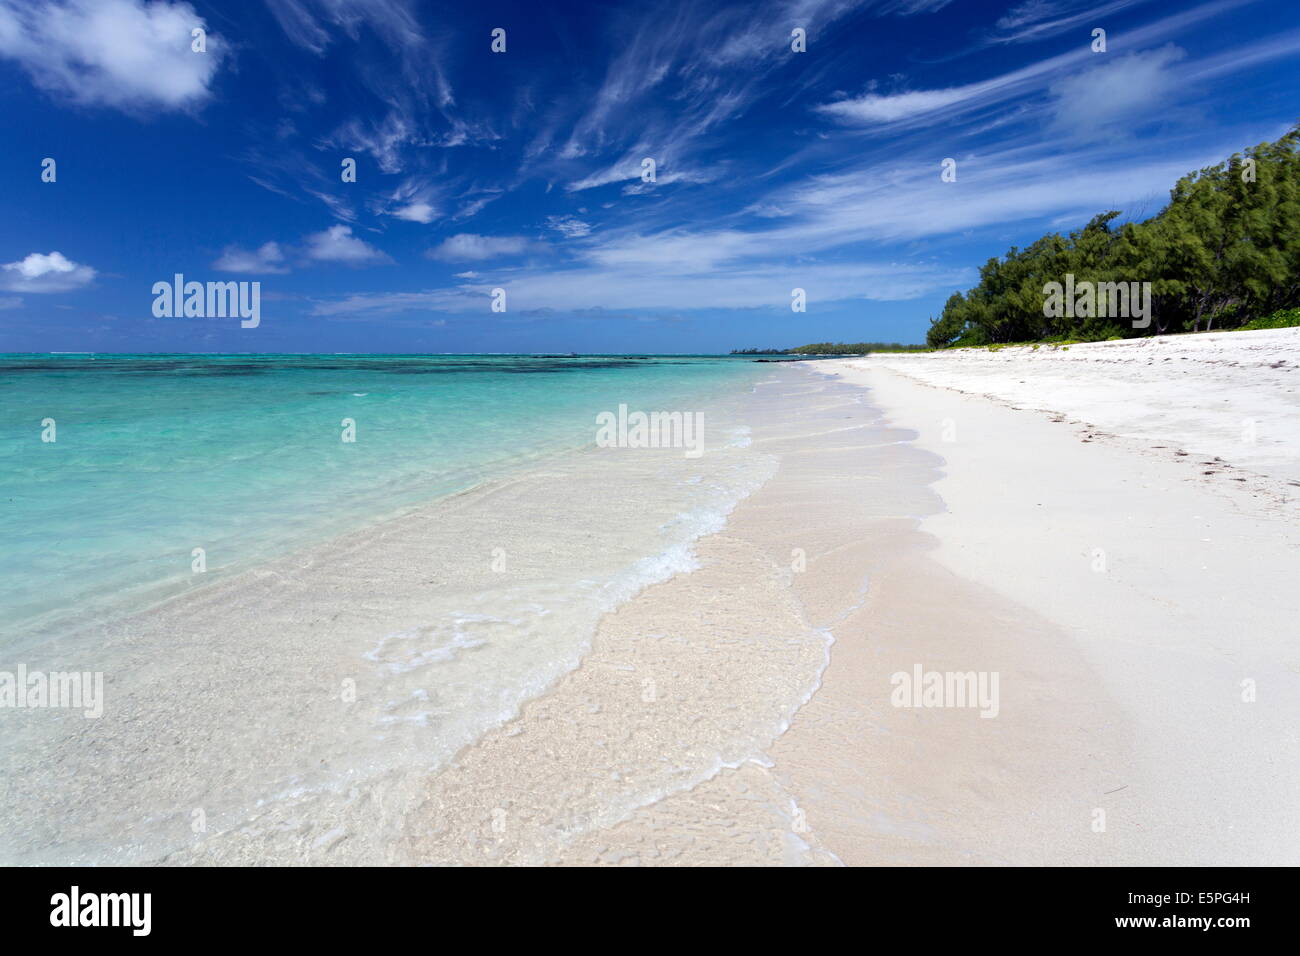 Idyllischer Strand-Szene mit blauem Himmel, türkisblauem Meer und weichen Sand, Ile Aux Cerfs, Mauritius, Indischer Ozean, Afrika Stockfoto